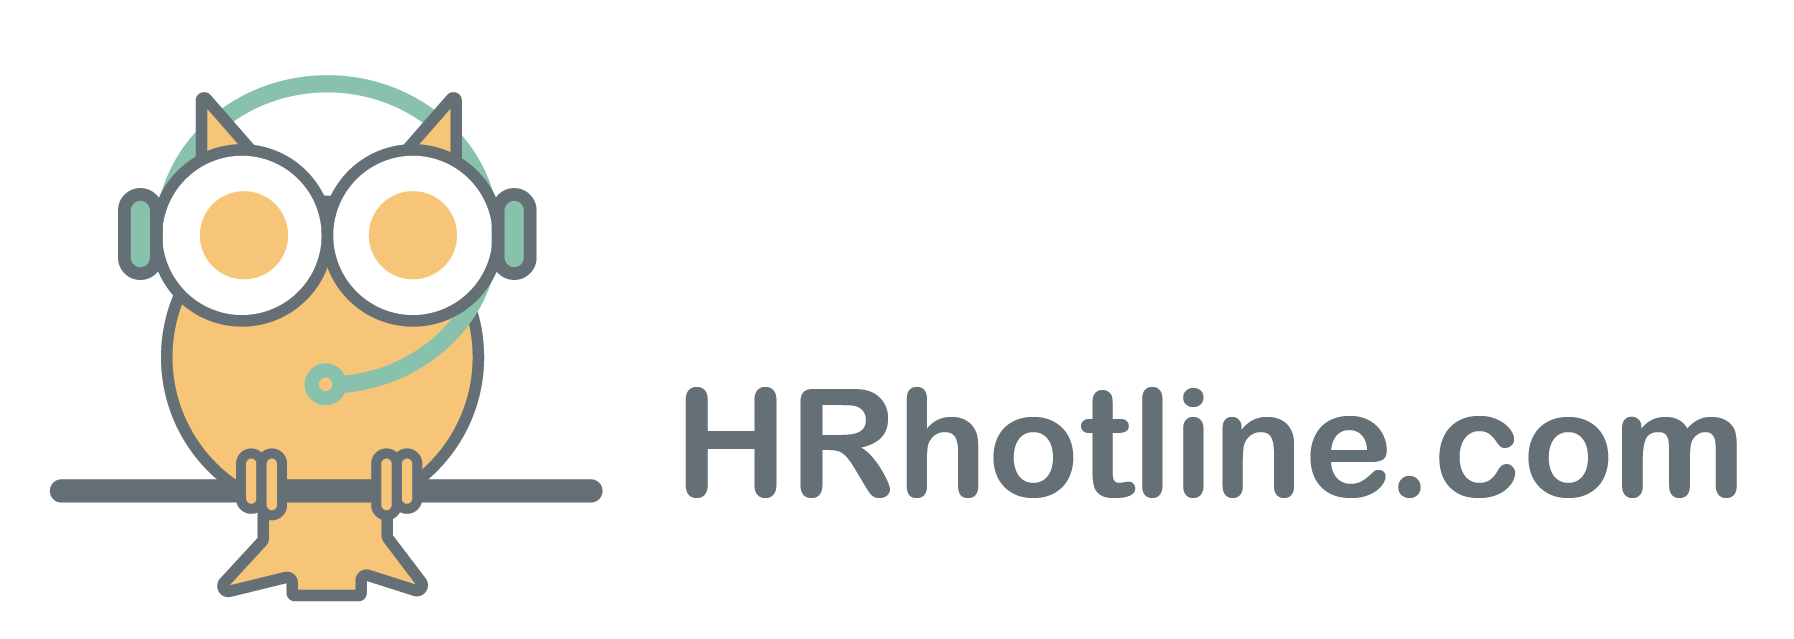 HRhotline.com